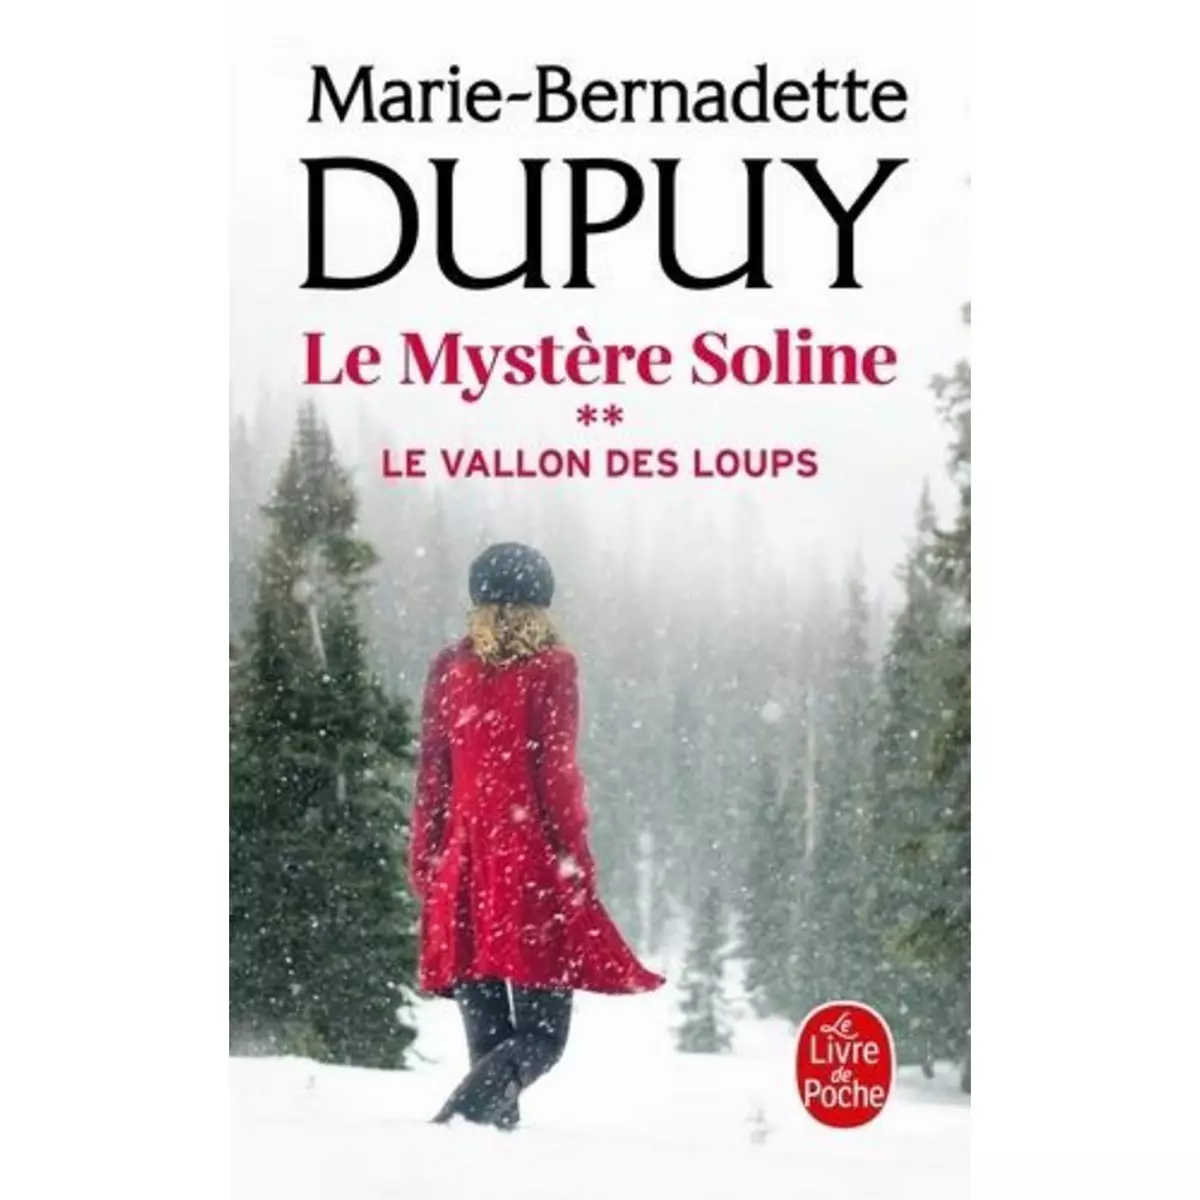  LE MYSTERE SOLINE TOME 2 : LE VALLON DES LOUPS, Dupuy Marie-Bernadette